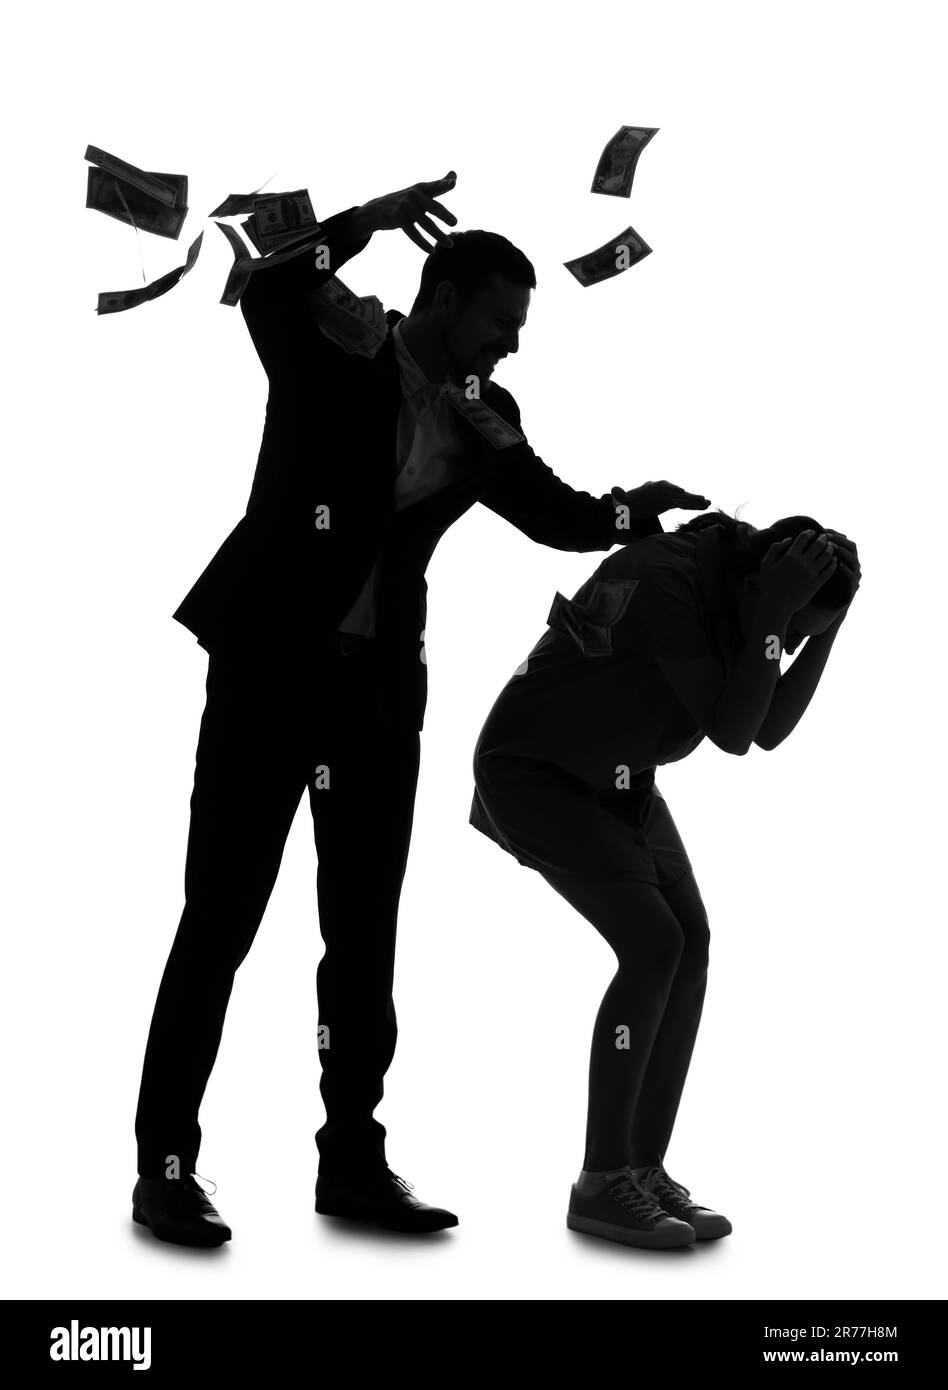 Silhouette d'homme avec de l'argent battant sa femme sur fond blanc. Concept de violence domestique Banque D'Images